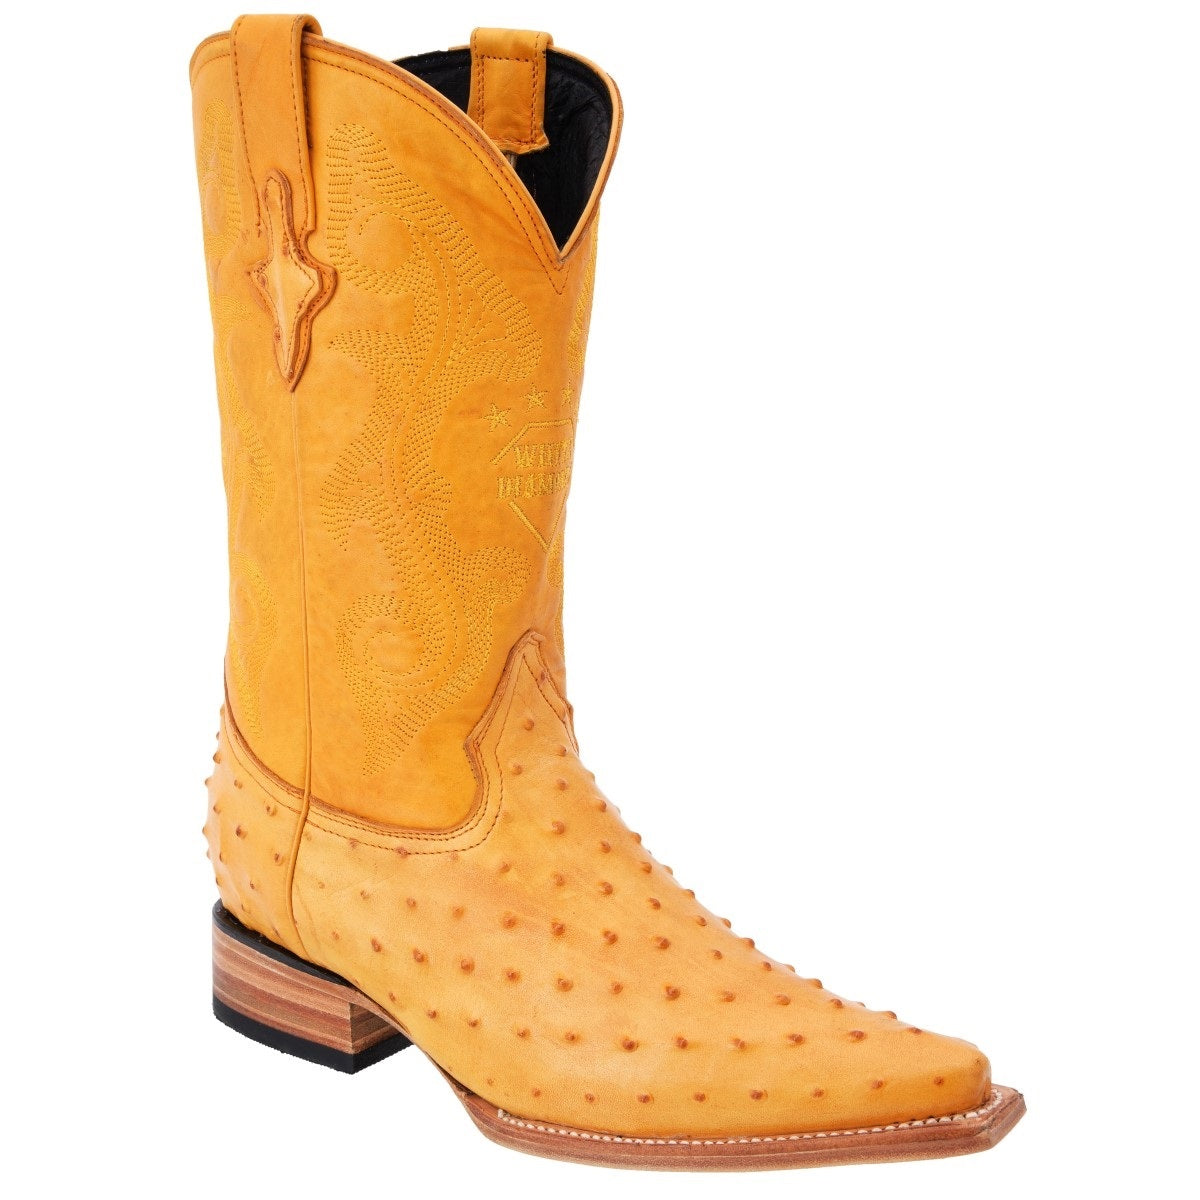 Botas Vaqueras TM-WD0164 - Western Boots